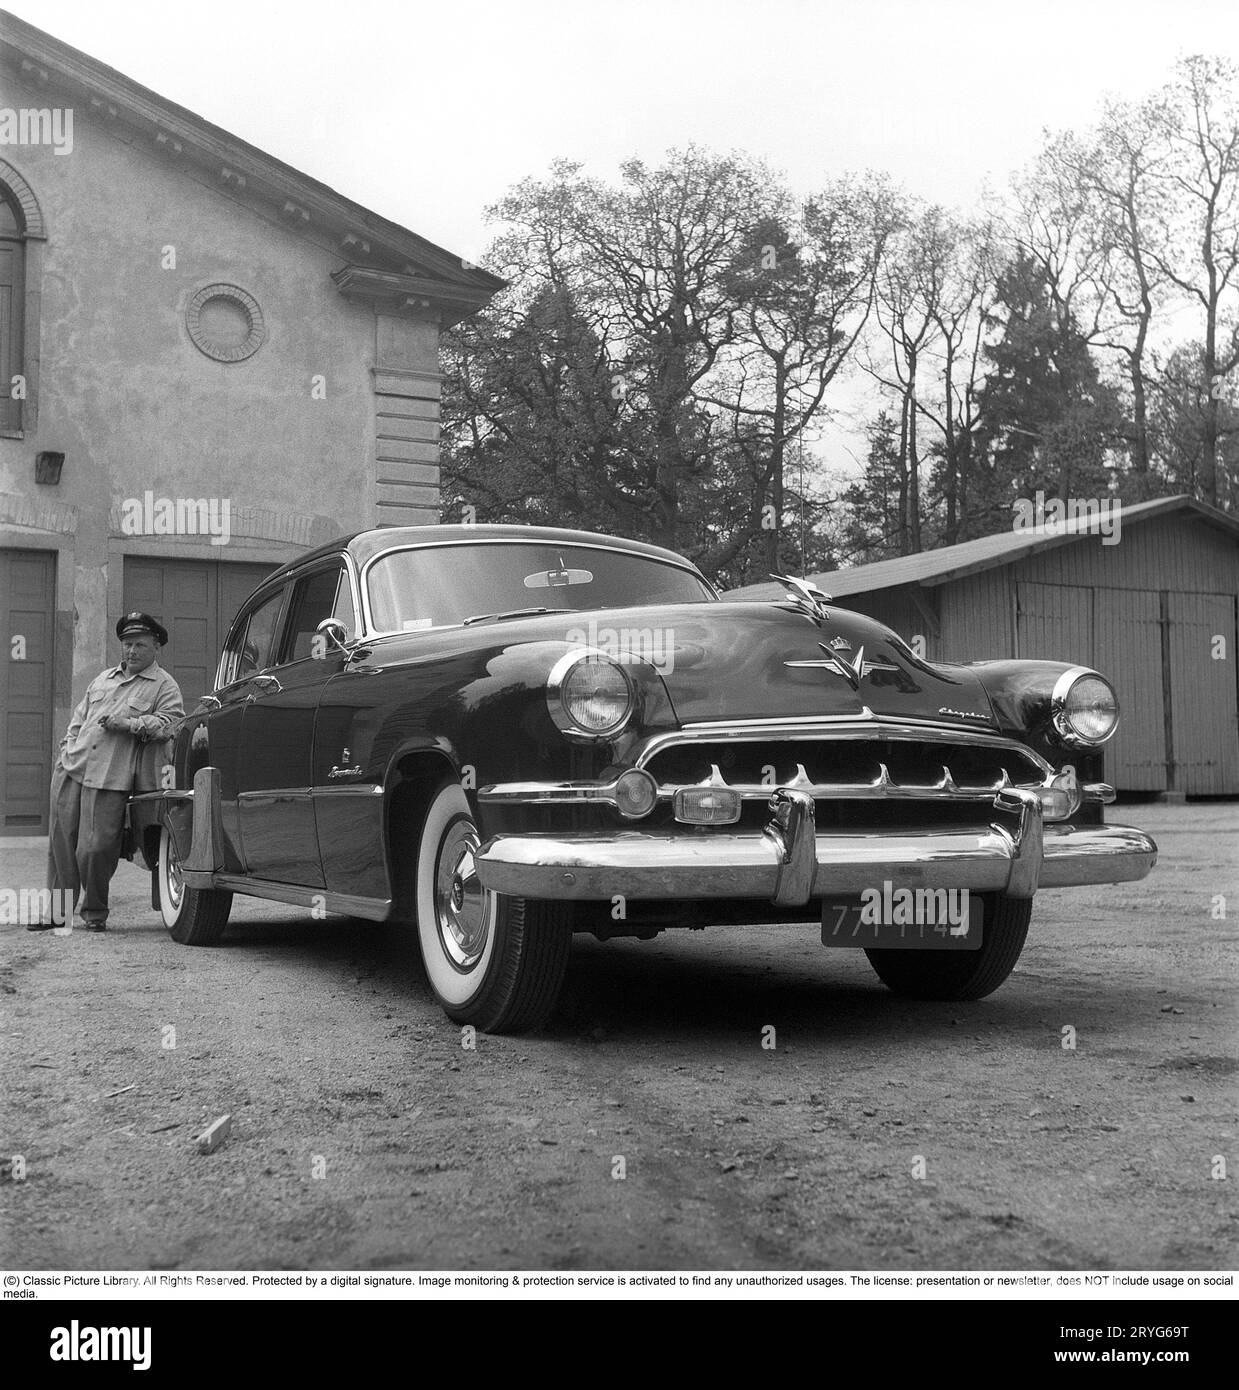 Negli anni '1950 Un uomo vicino alla sua auto ed è visibilmente orgoglioso e forse un po' arrogante. Forse non così strano come è il proprietario di un'impressionante auto americana del marchio Chrysler Imperial. Negli anni '1950, molti dettagli sono stati cromati: griglia, paraurti, modanature. Svezia 1951. Kristoffersson rif. BP31-7 Foto Stock